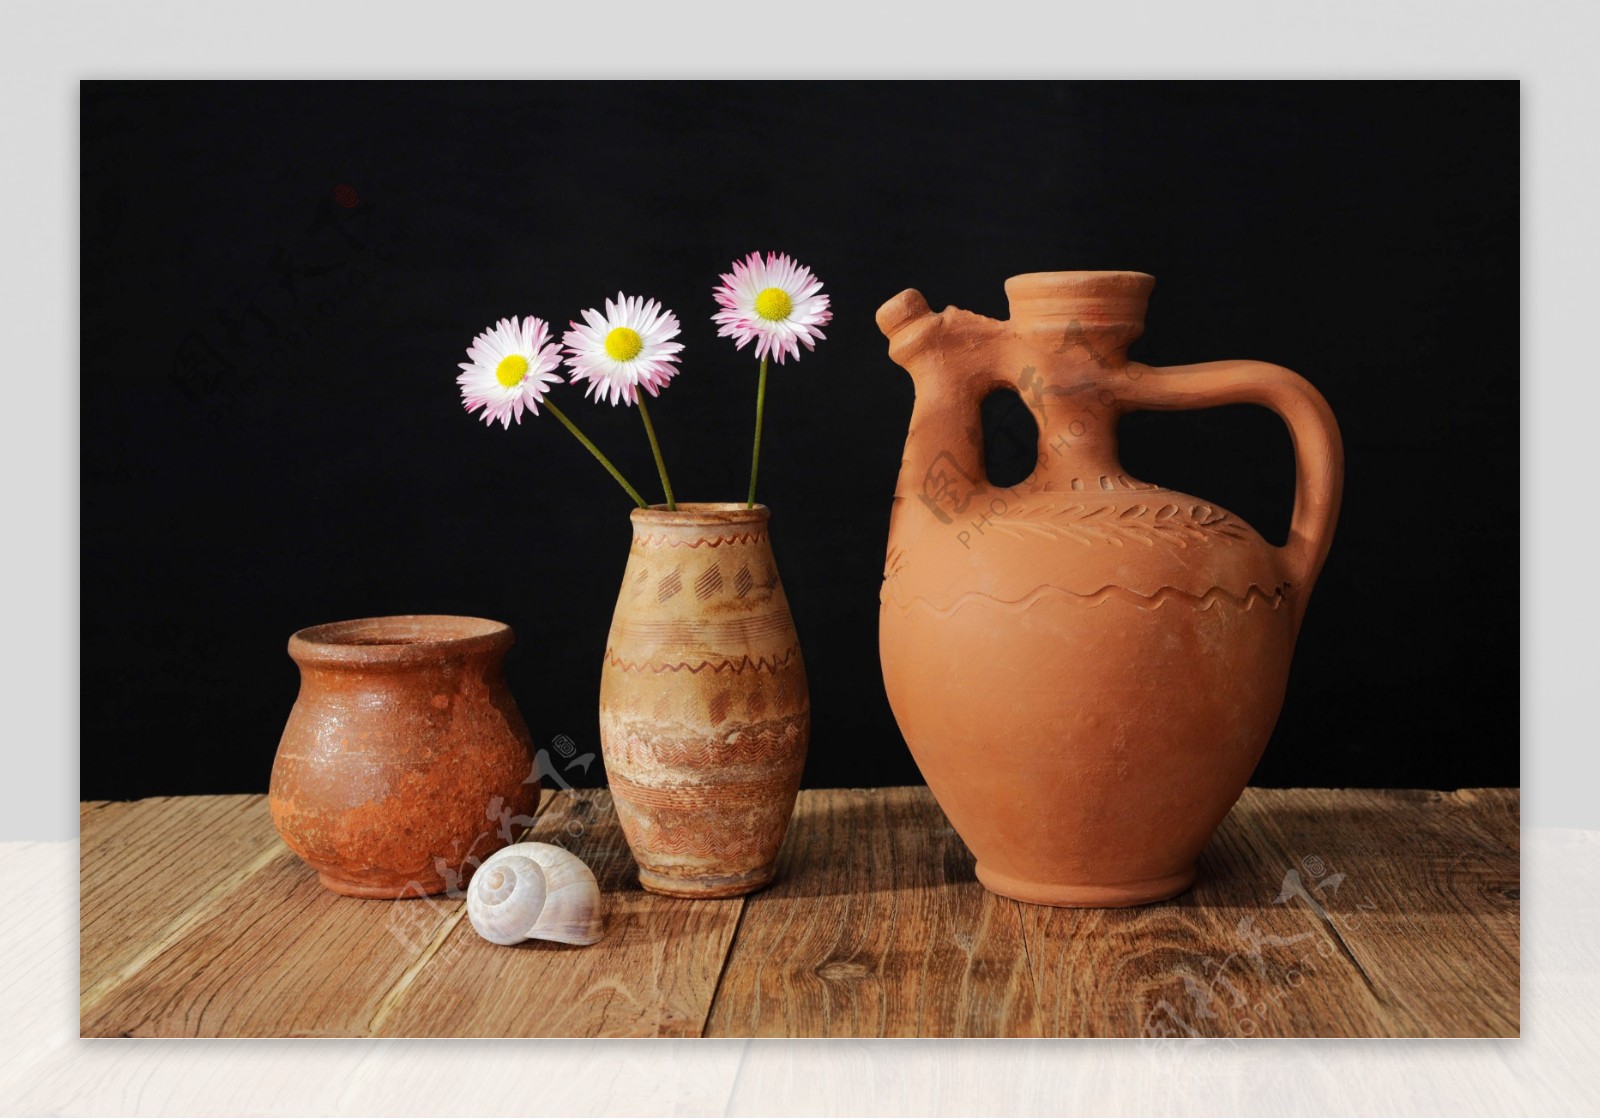 陶瓷的花瓶和三朵菊花图片